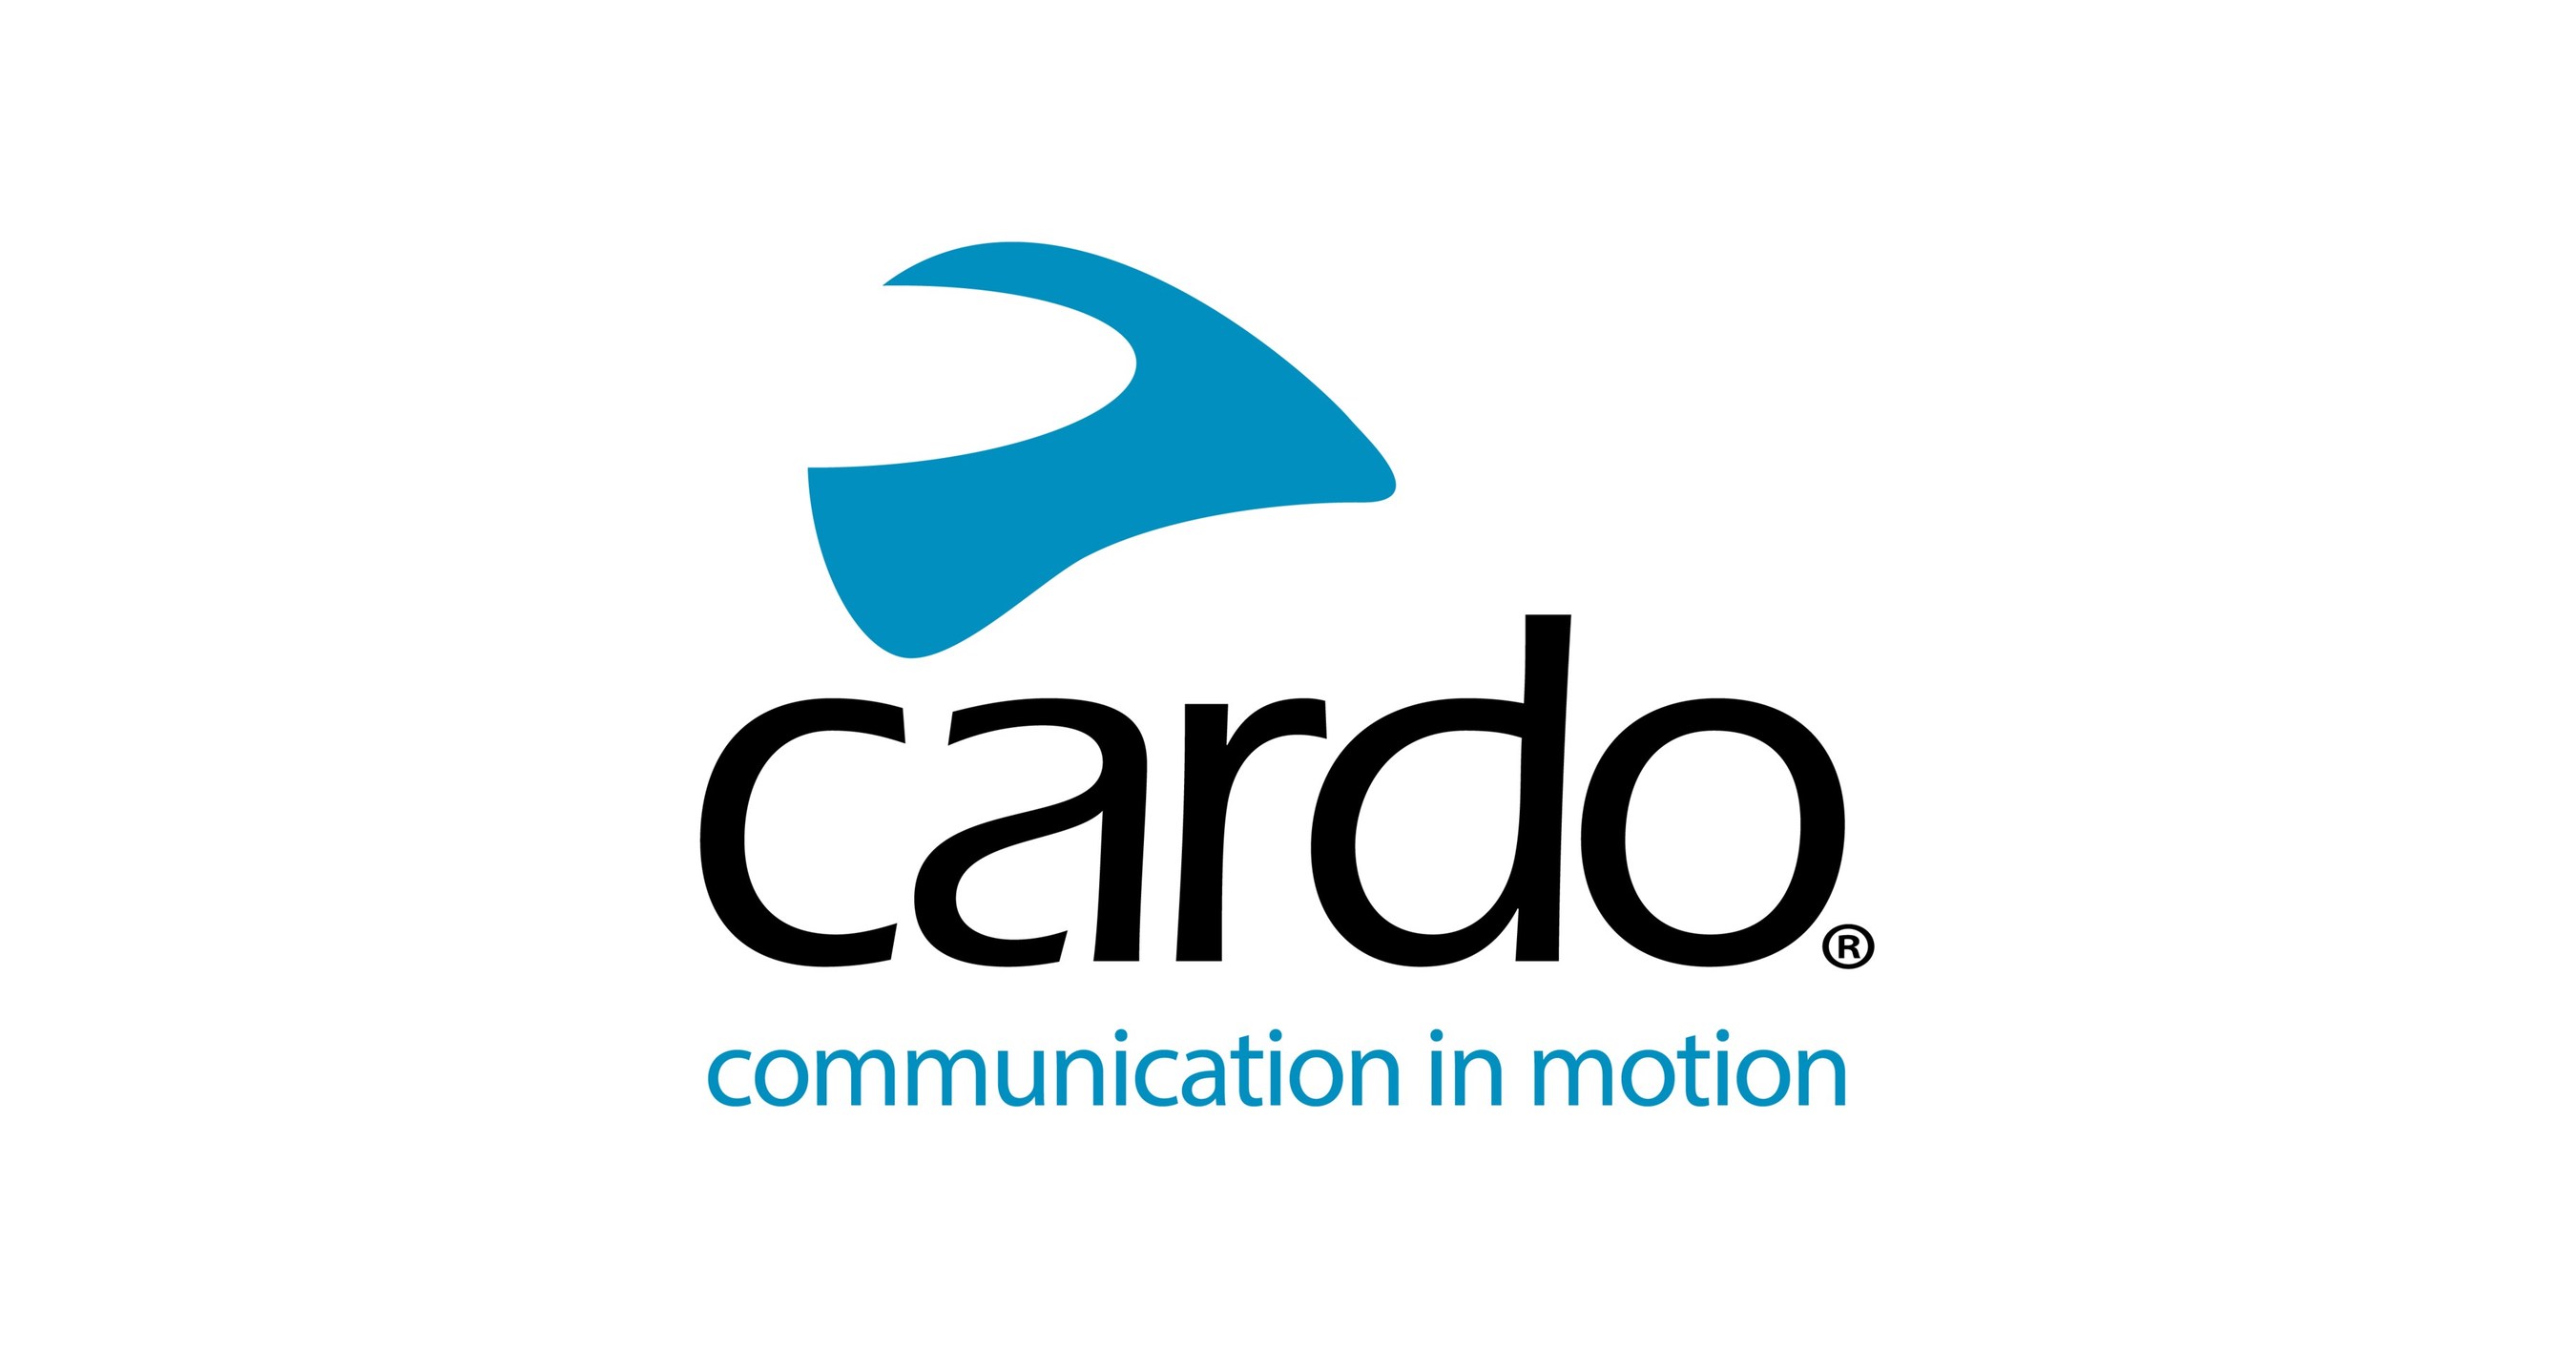 CARDO Packtalk - Système de communication Bluetooth pour Casque de